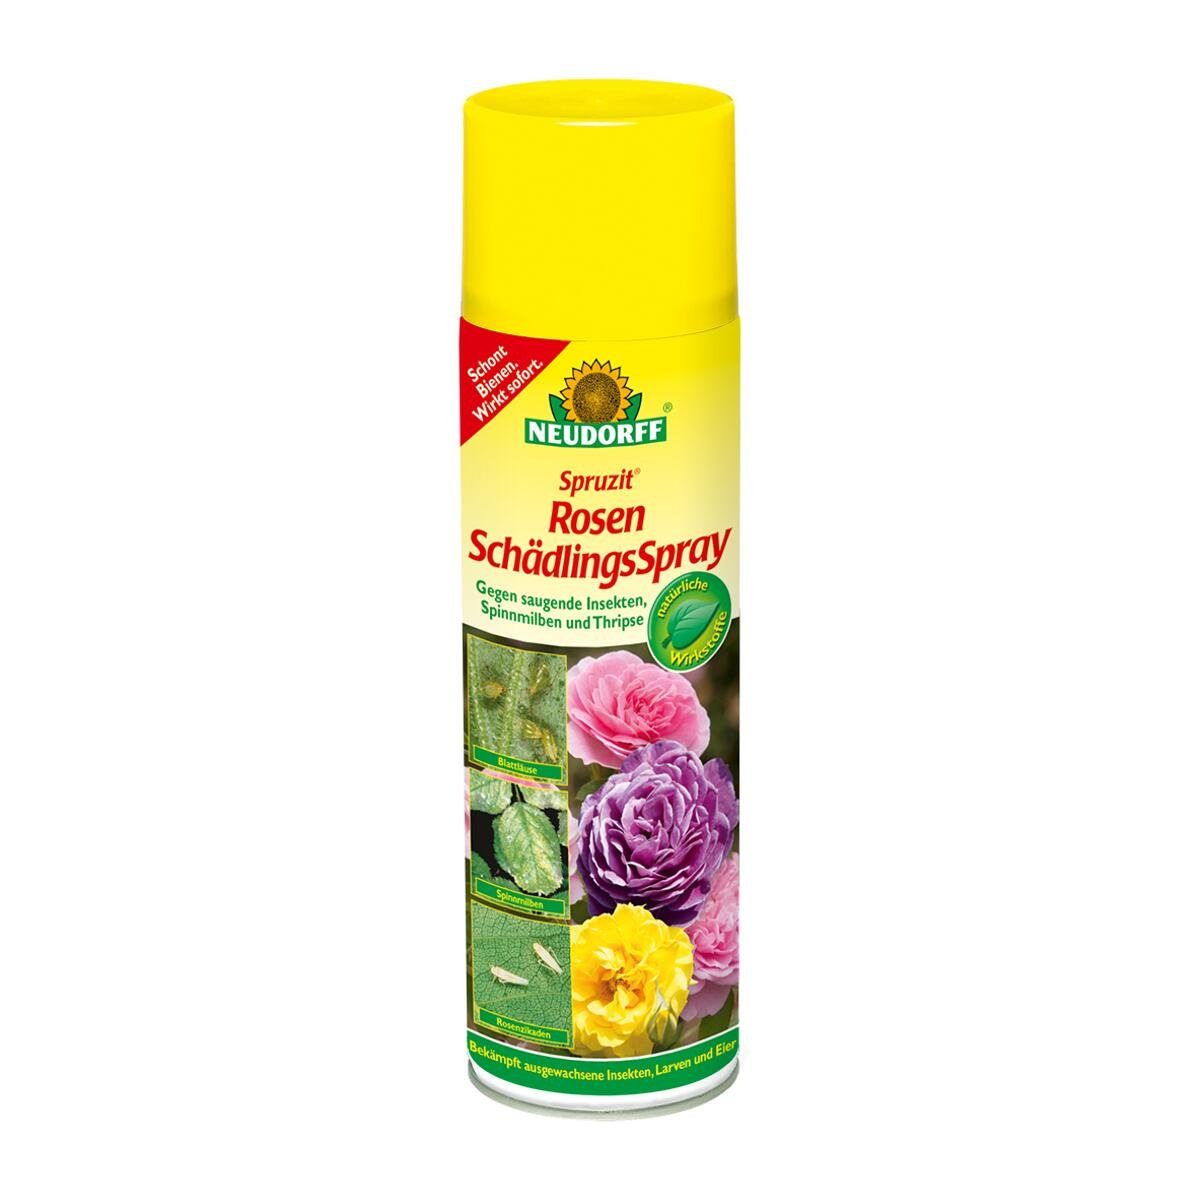 Neudorff Insektenvernichtungsmittel Rosen ml 400 Spruzit - SchädlingsSpray